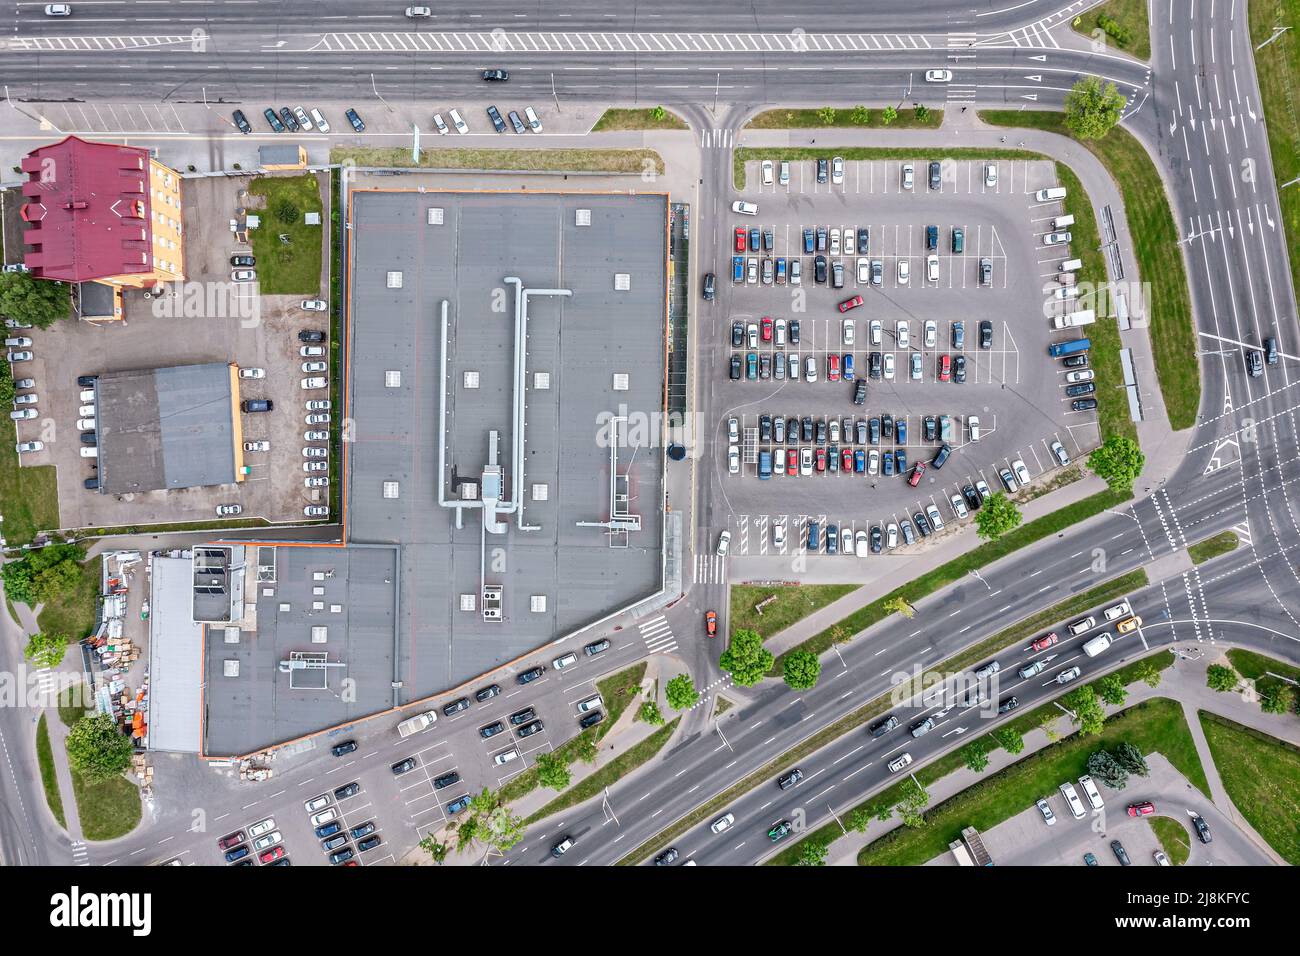 vue aérienne sur le parking avec de nombreuses voitures de supermarché centre commercial Banque D'Images